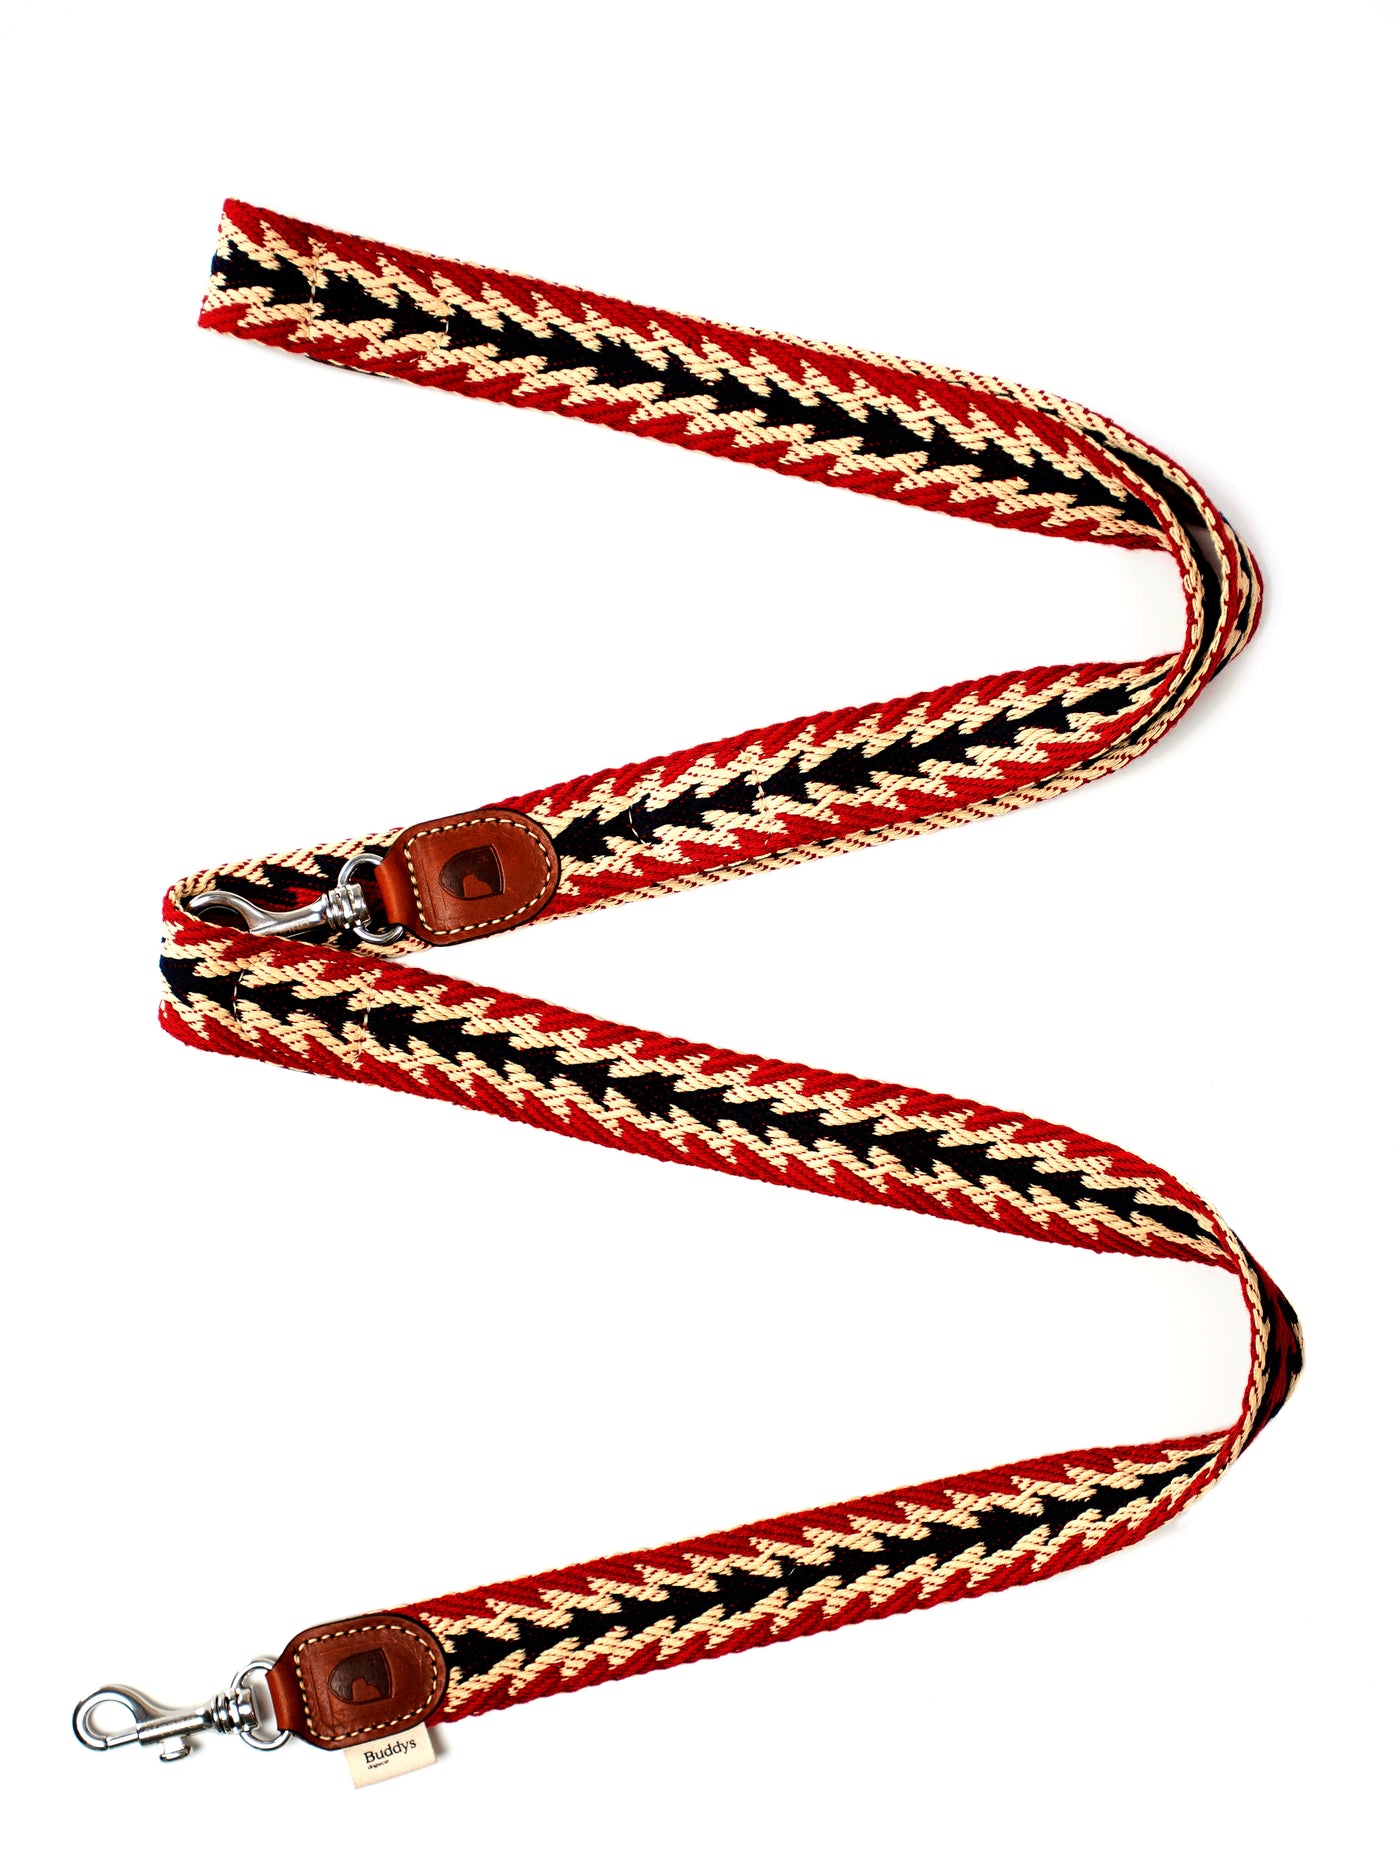 寵物手工編織棉拖帶 -  秘魯系列 箭頭花紋